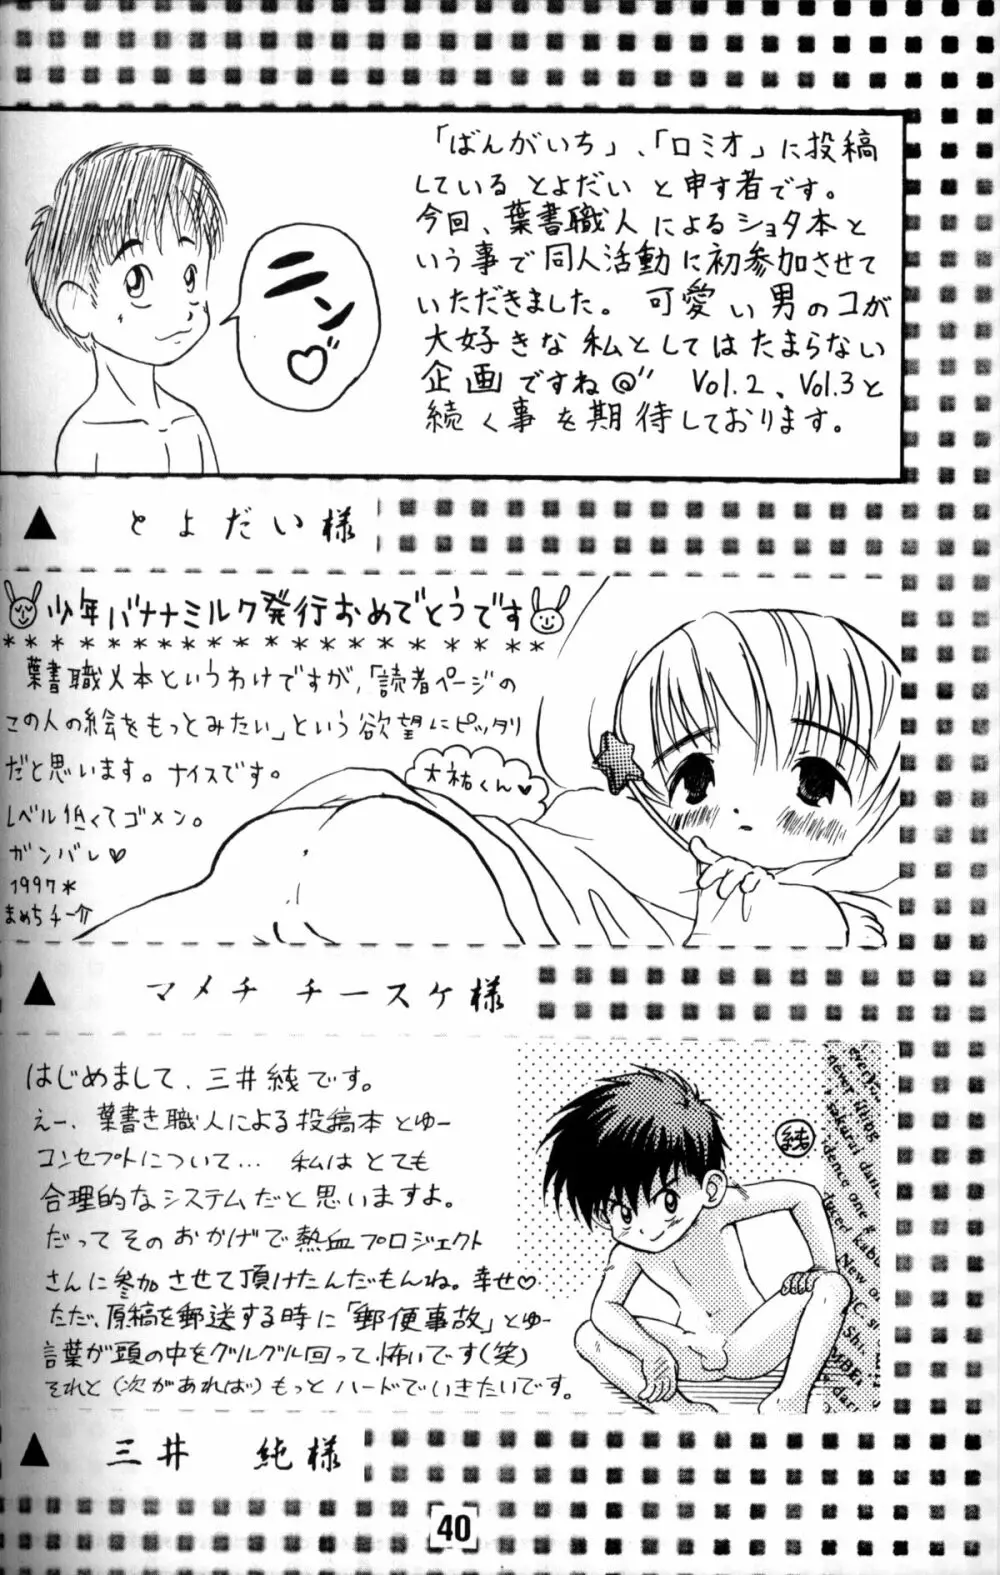 Anthology - Nekketsu Project - Volume 1 'Shounen Banana Milk' - page39